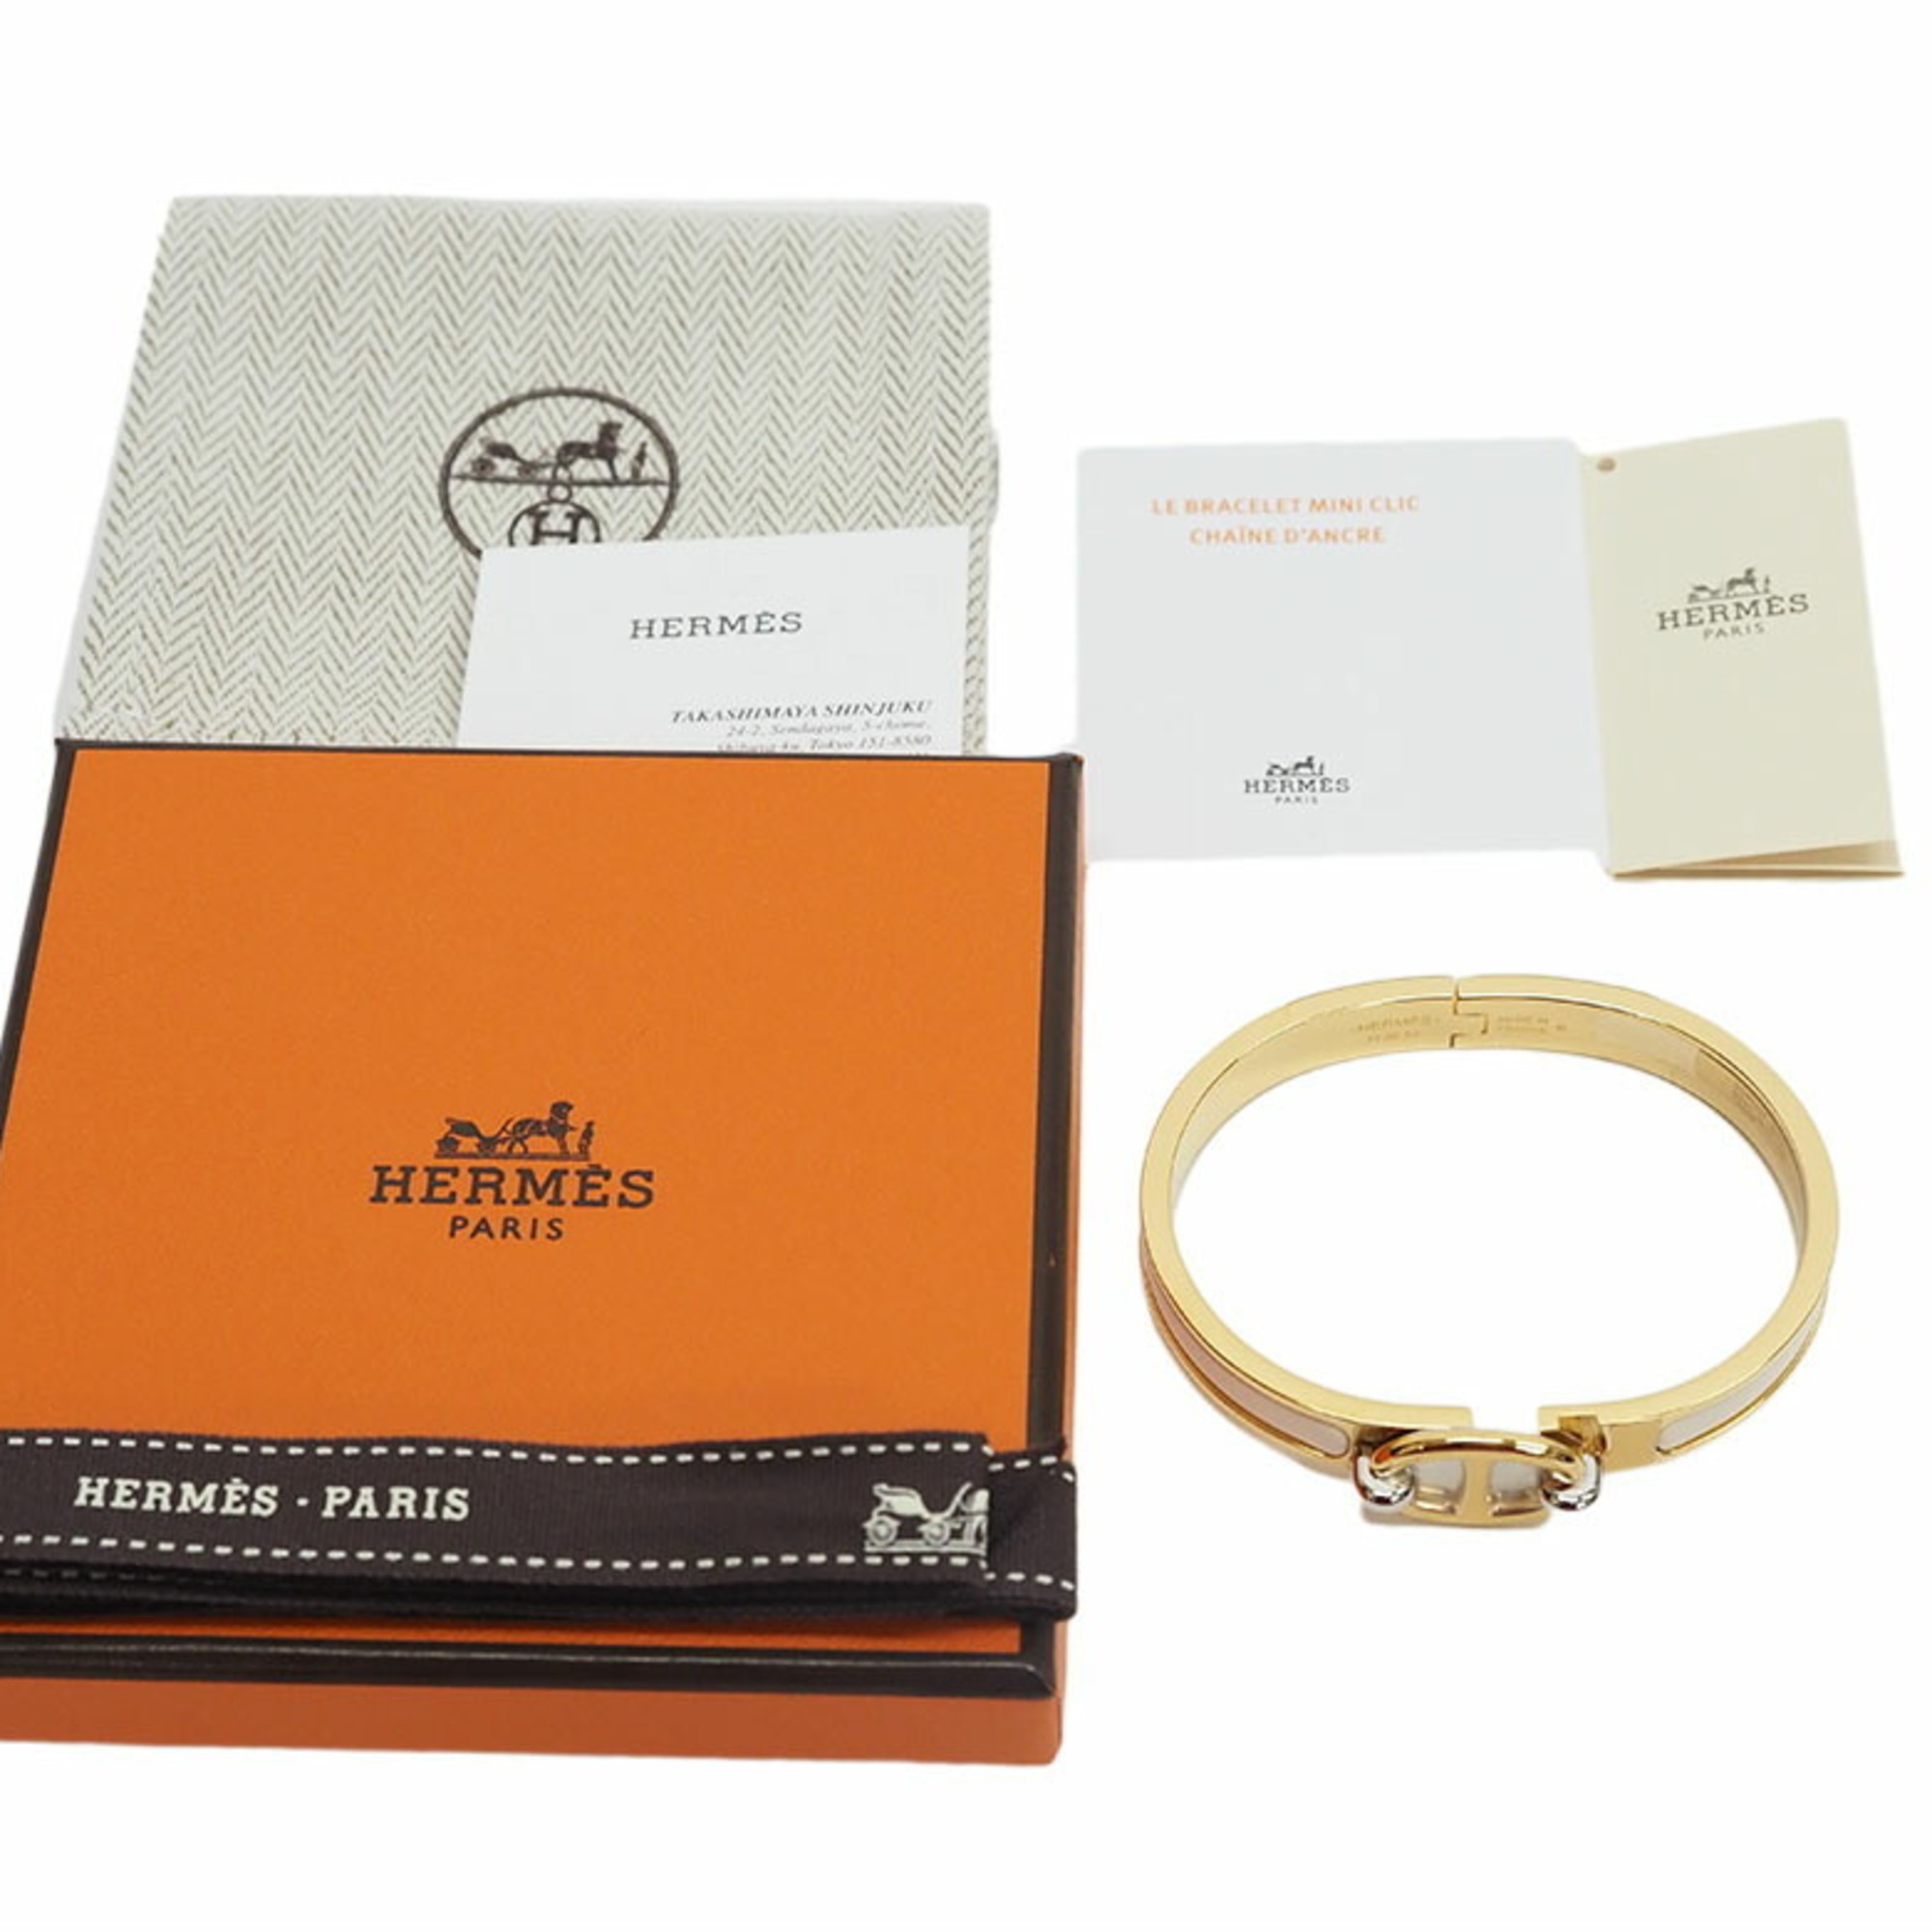 Hermes HERMES Enamel Bracelet Mini Click Shane Dunkle 8mm Cream Gold Women's